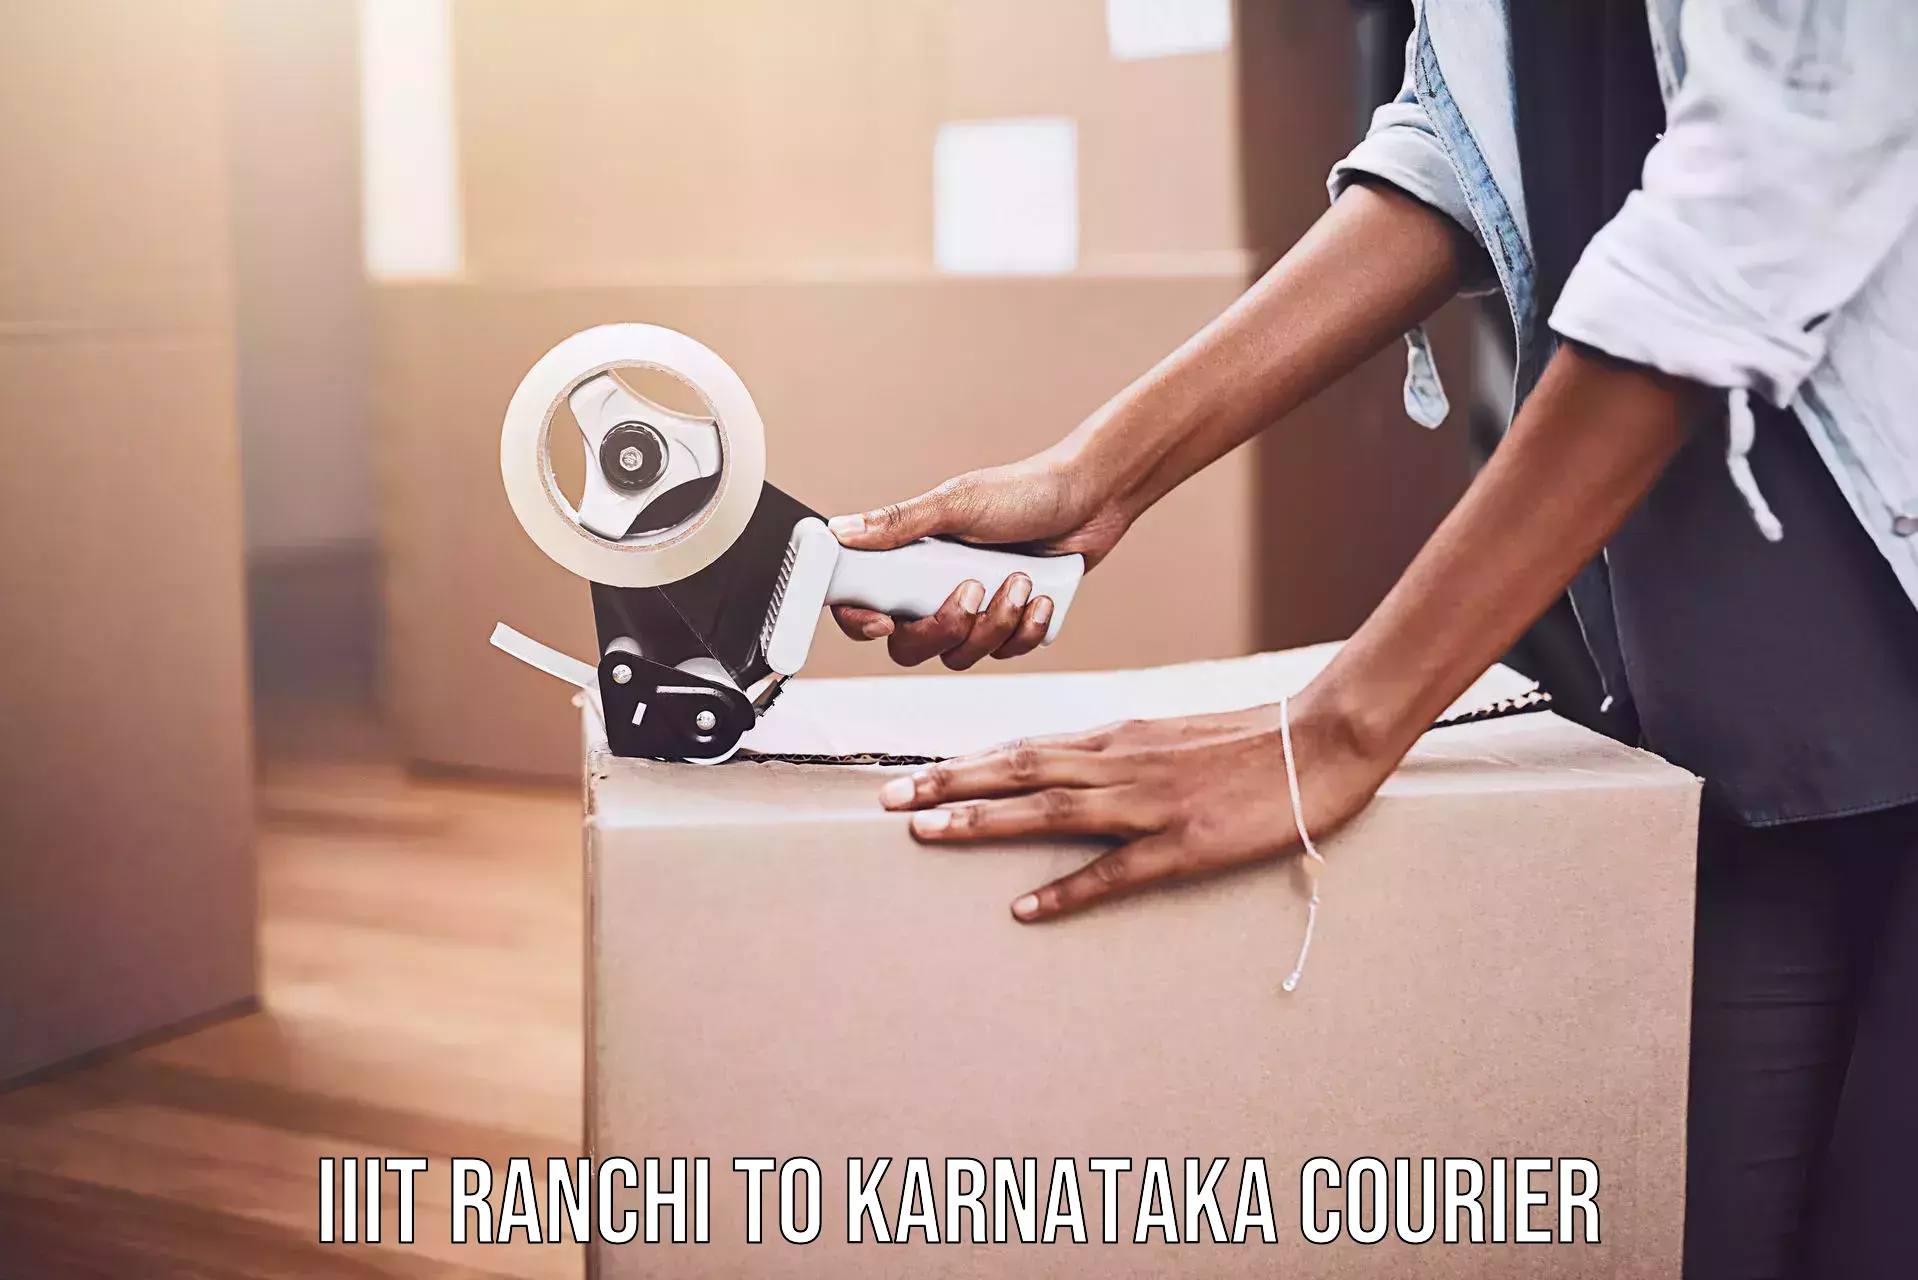 Lightweight parcel options IIIT Ranchi to Dakshina Kannada